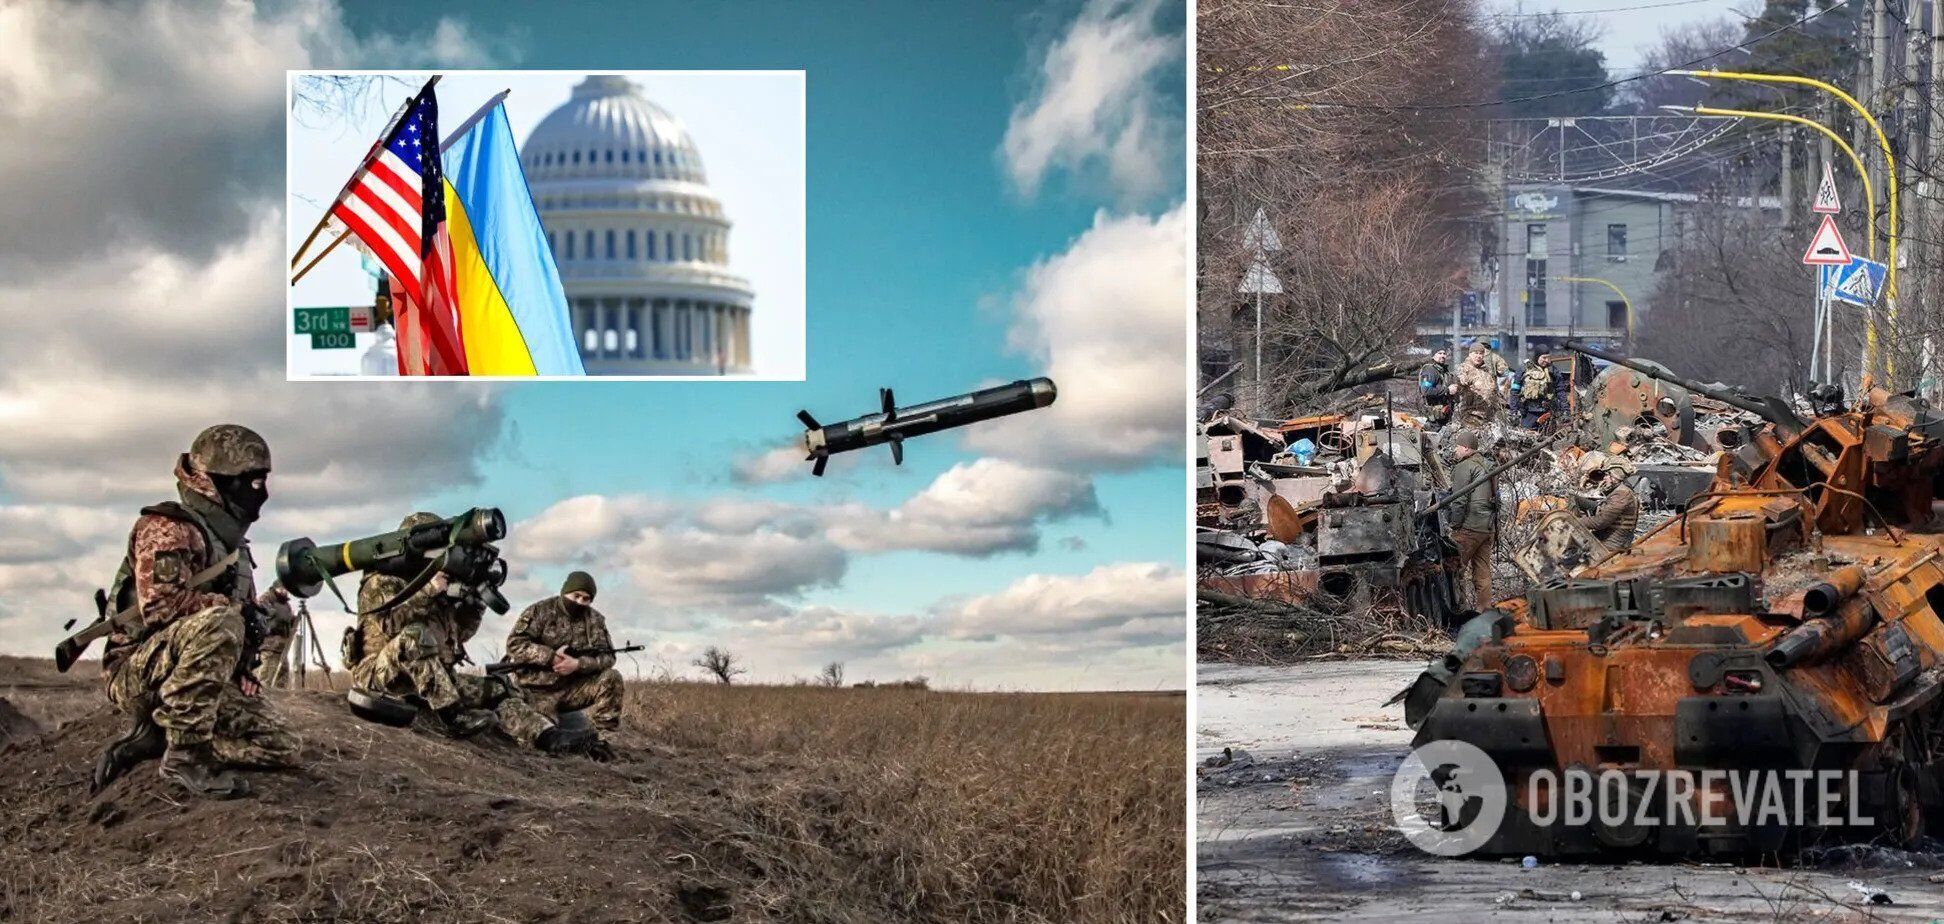 "Це надзвичайне досягнення": Снайдер оцінив мужність ЗСУ у боротьбі з РФ і пояснив, чому США мають надалі підтримувати Україну